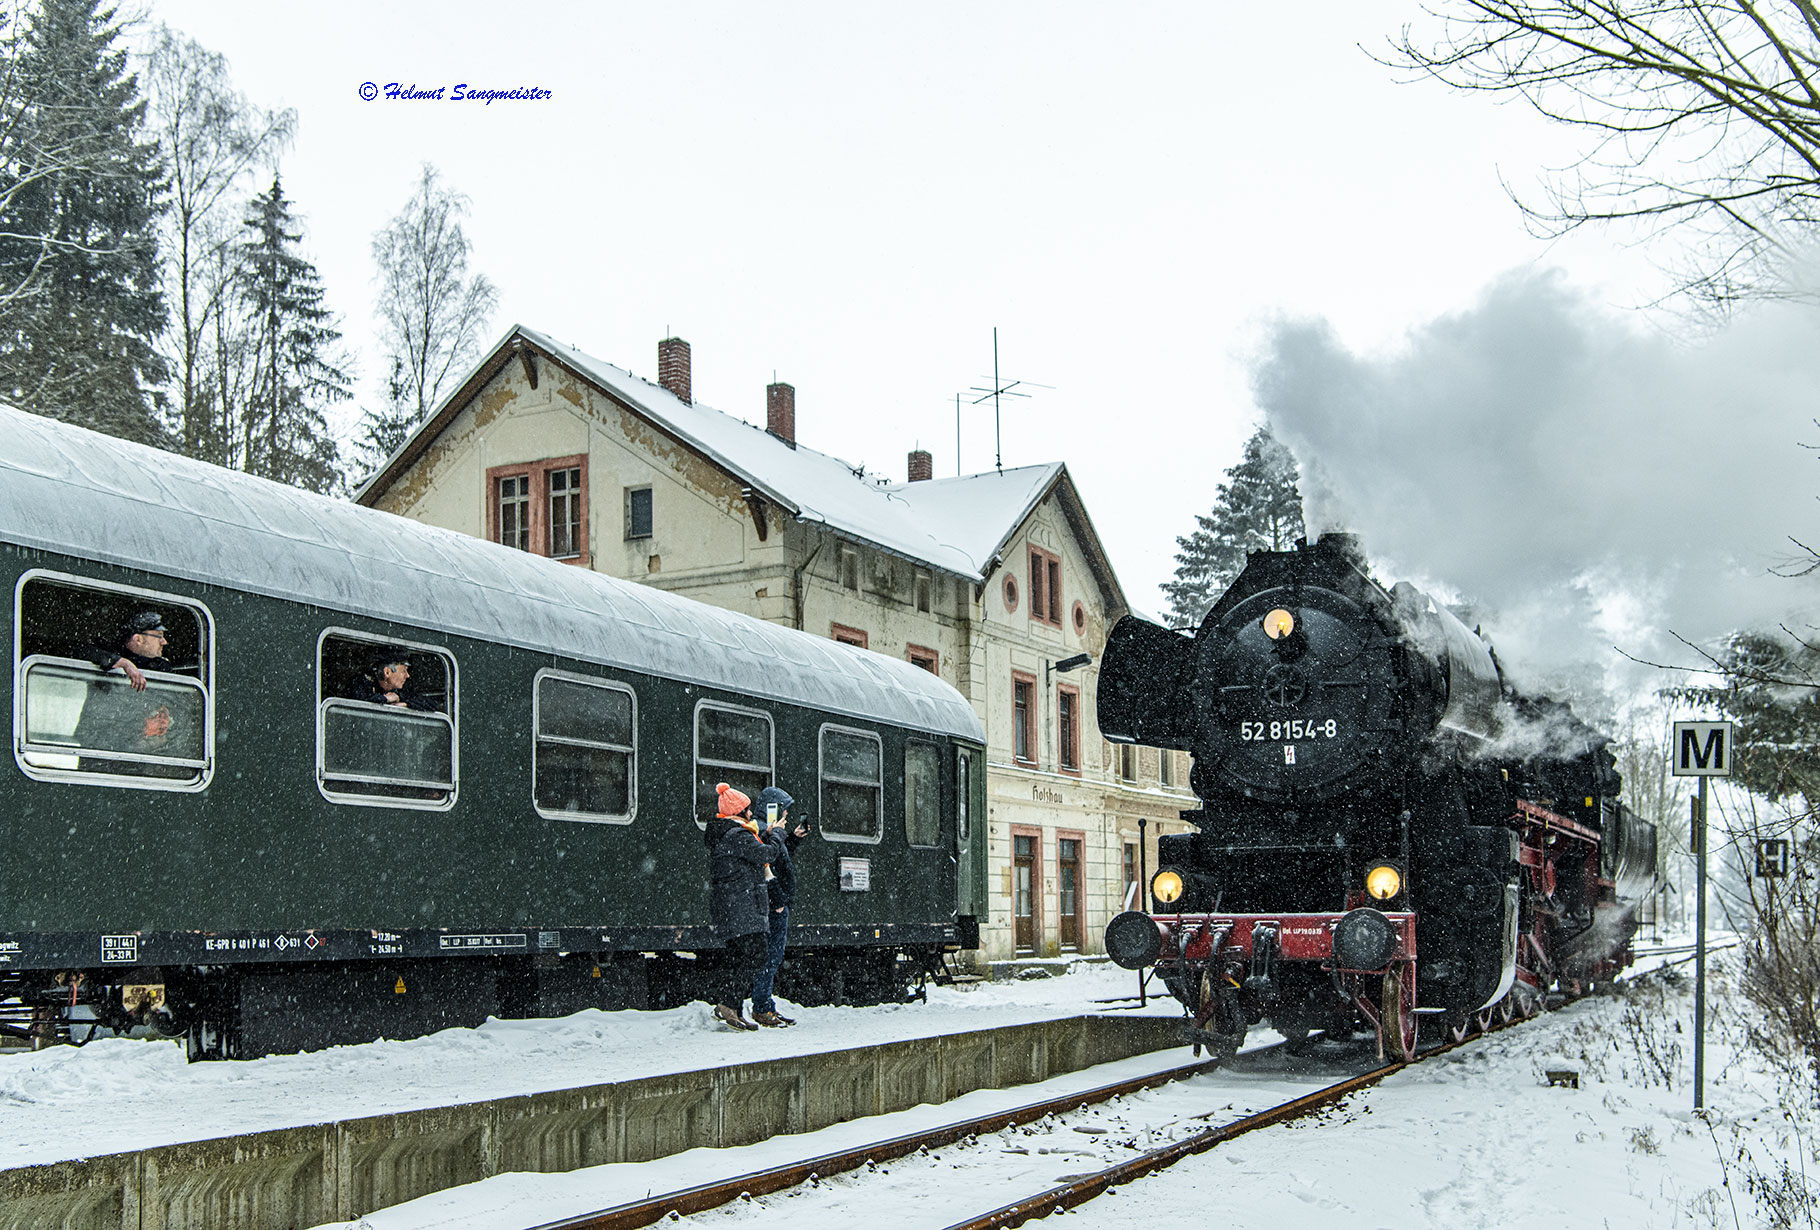 Sie sollten sehen: die Dampflokomotive 52 8154 des Eisenbahnmuseums Leipzig im Bahnhof Holzhau. Es ist winterlich mit etwas Schnee. Links im Bild angeschnitten ein Reisezugwagen der Gattung ABme, der zum Zug gehört. Die Lok umfährt den Zug. Im Hintergrund das Bahnhofsgebäude.